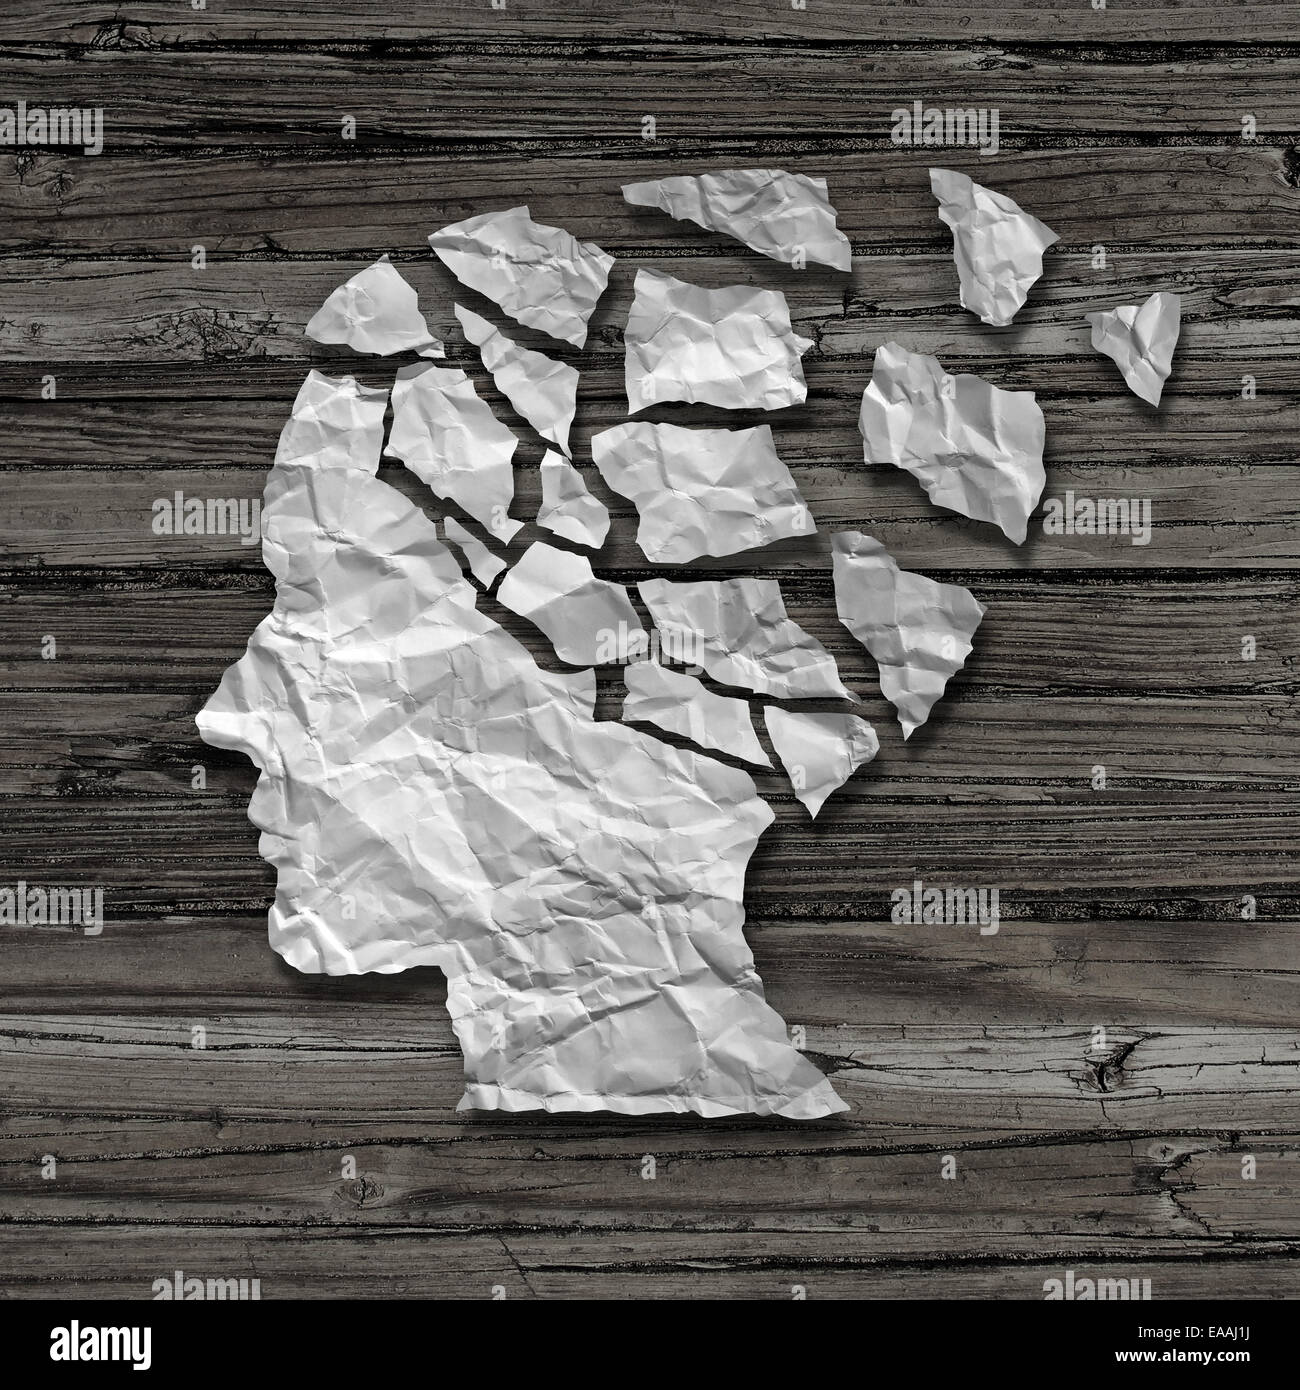 Alzheimer Patienten medizinische mentale Gesundheitsversorgung Konzept als eine zerrissene zerknitterten weißes Blatt Papier geformt wie eine Seitenansicht eines menschlichen Gesichts auf einem alten Grunge Holz Hintergrund als Symbol für Neurologie und Demenz Probleme oder Gedächtnisverlust. Stockfoto